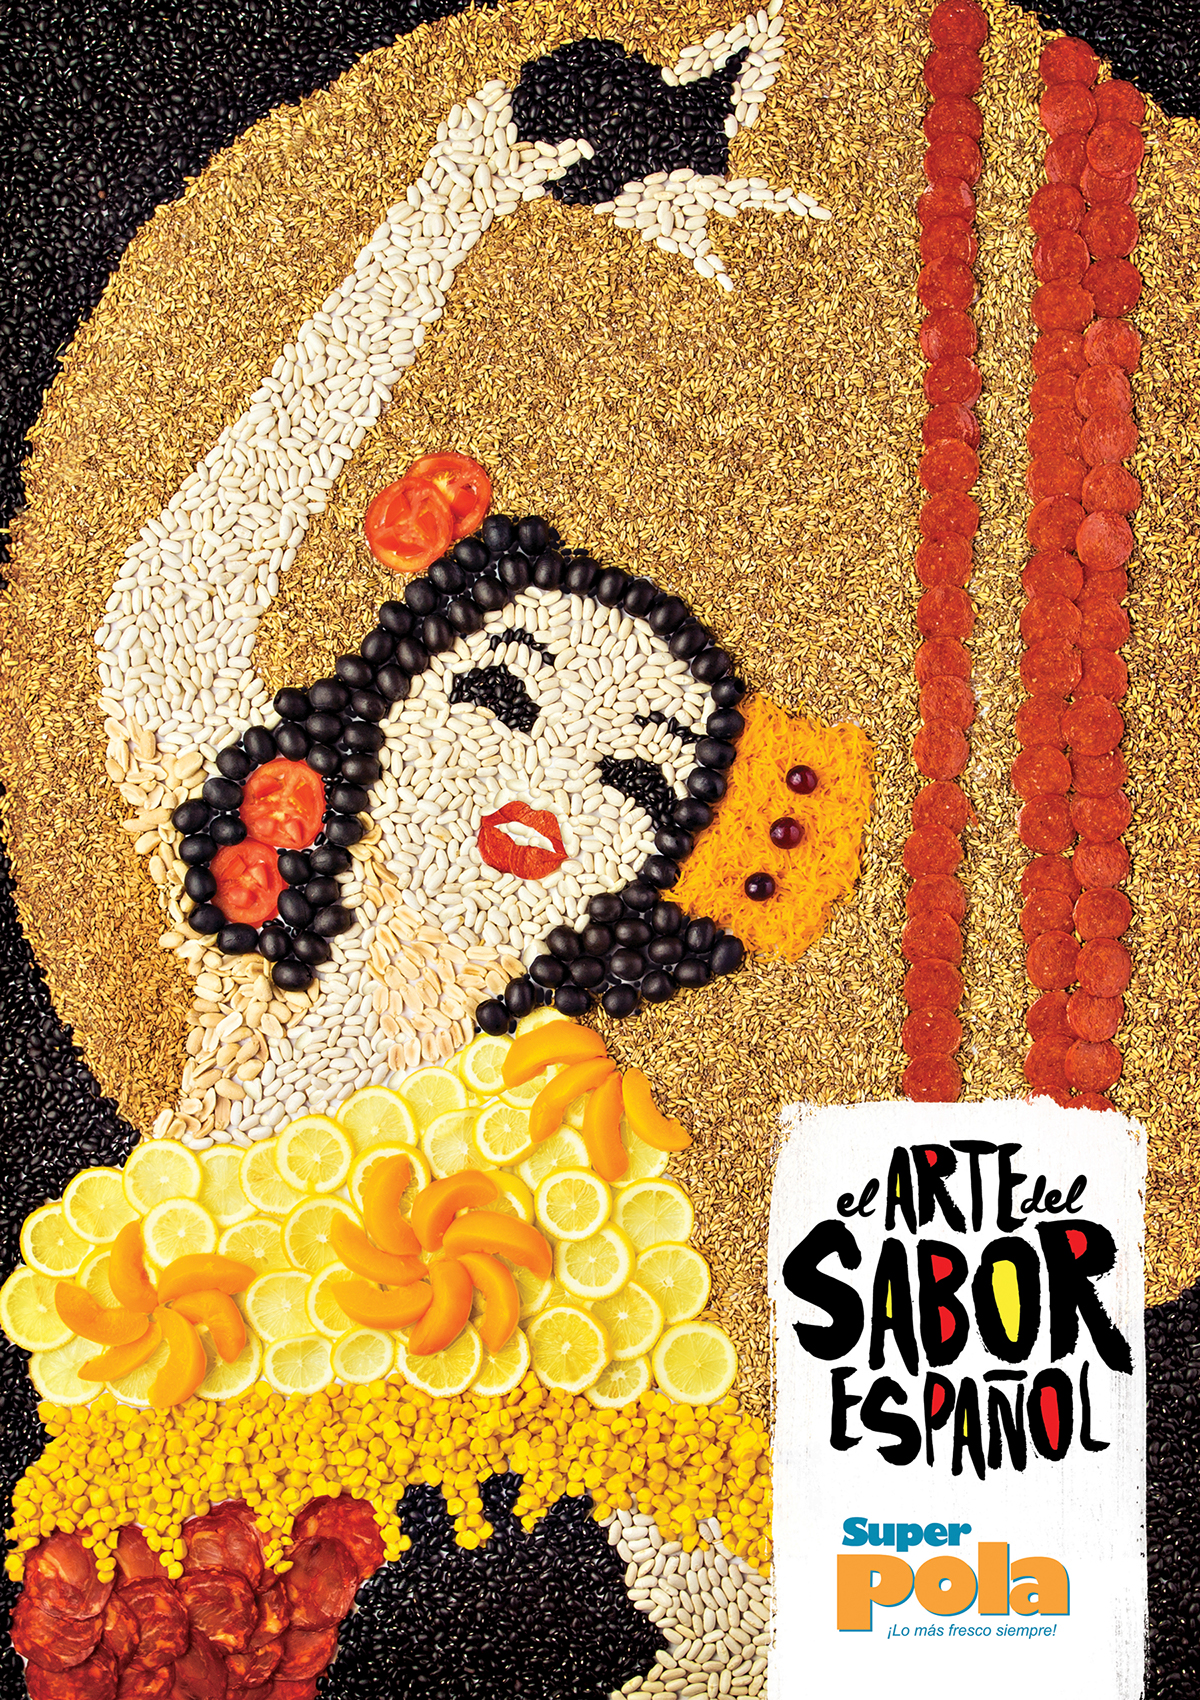 spain Super Pola Supermarket BBDO Spain Festival flavor gastronomic festival Dominican republic culture Picasso Flamenco